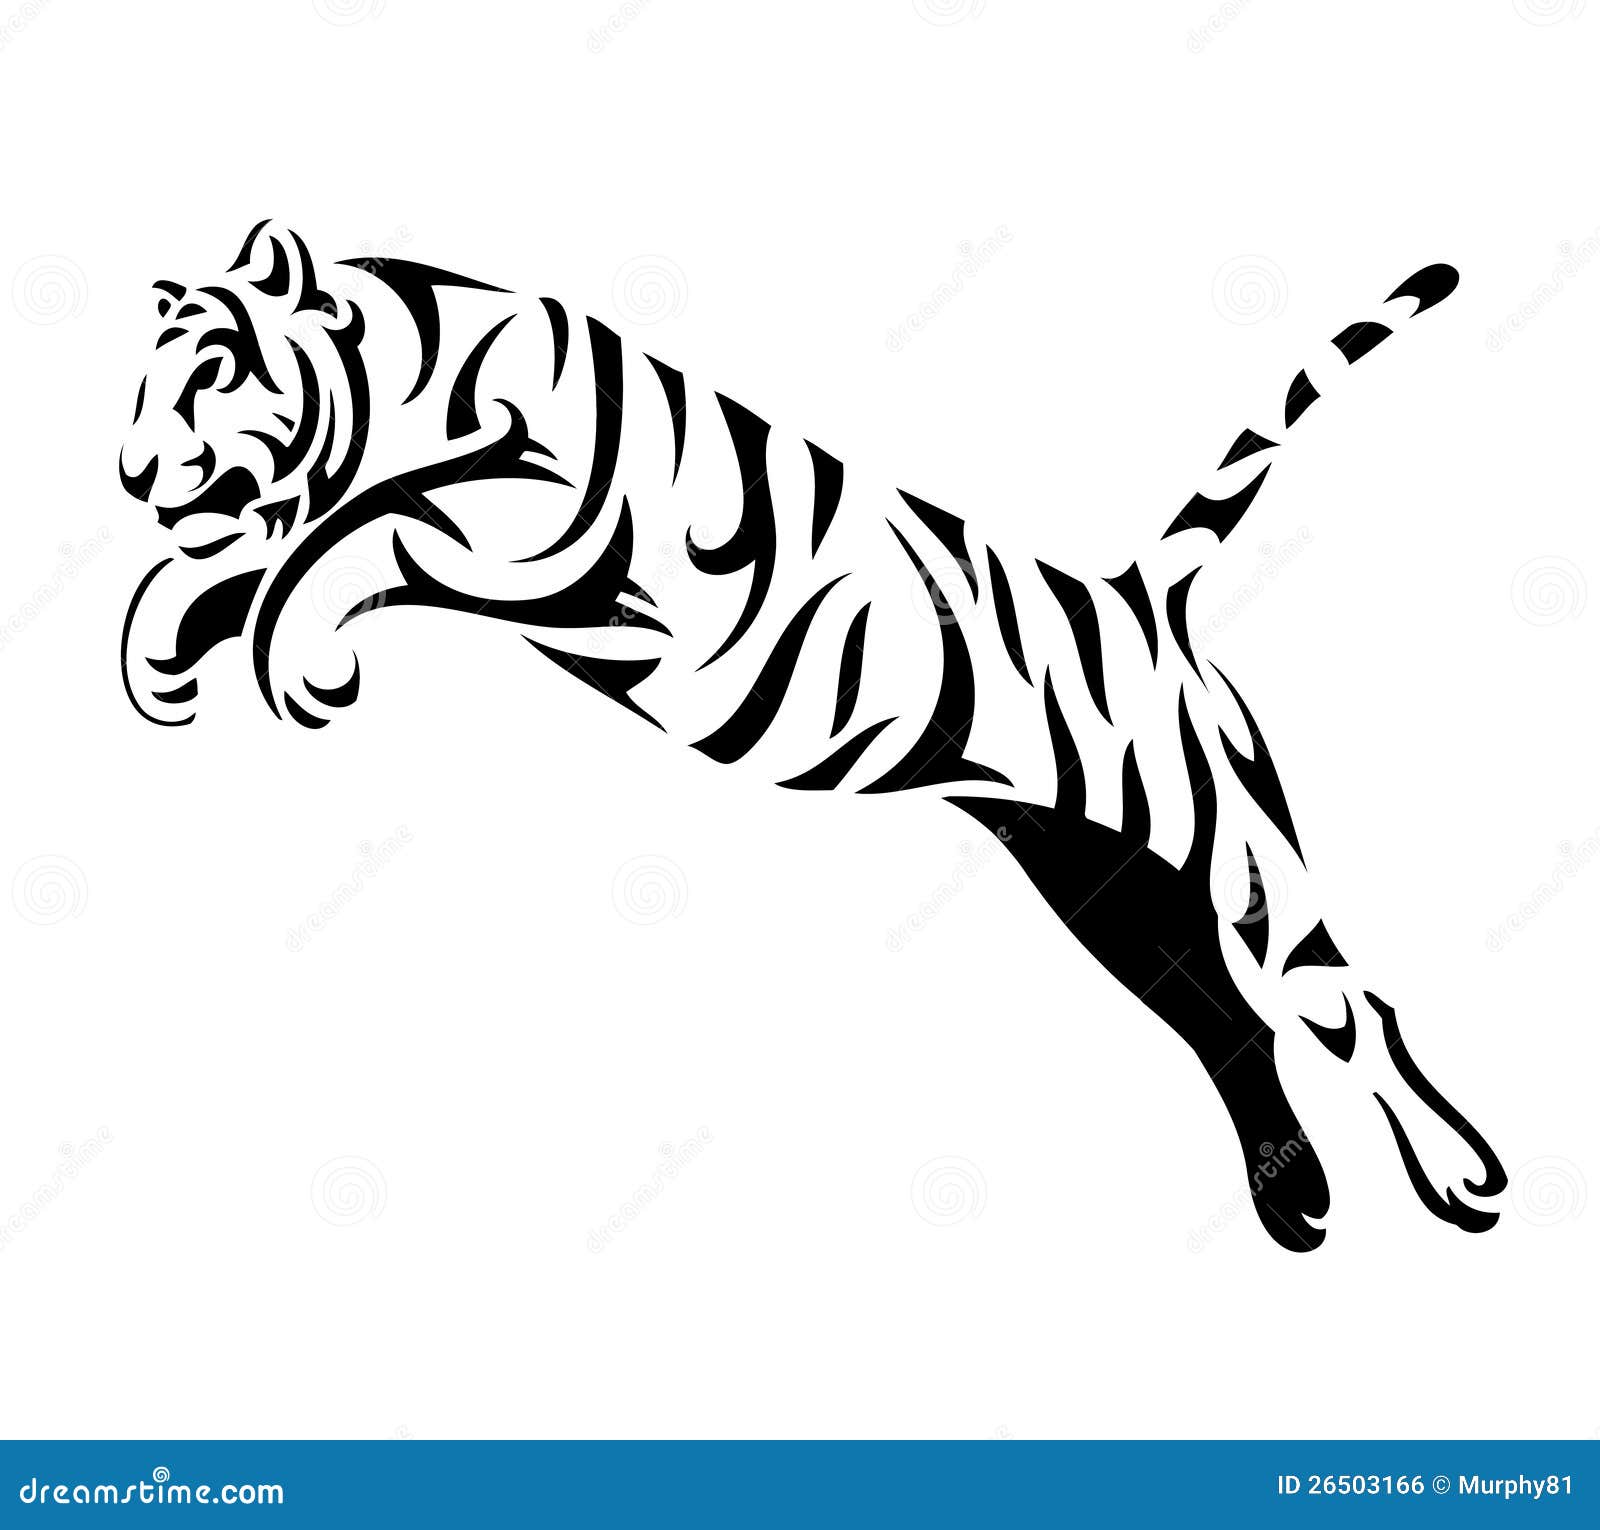 tribal tiger jump